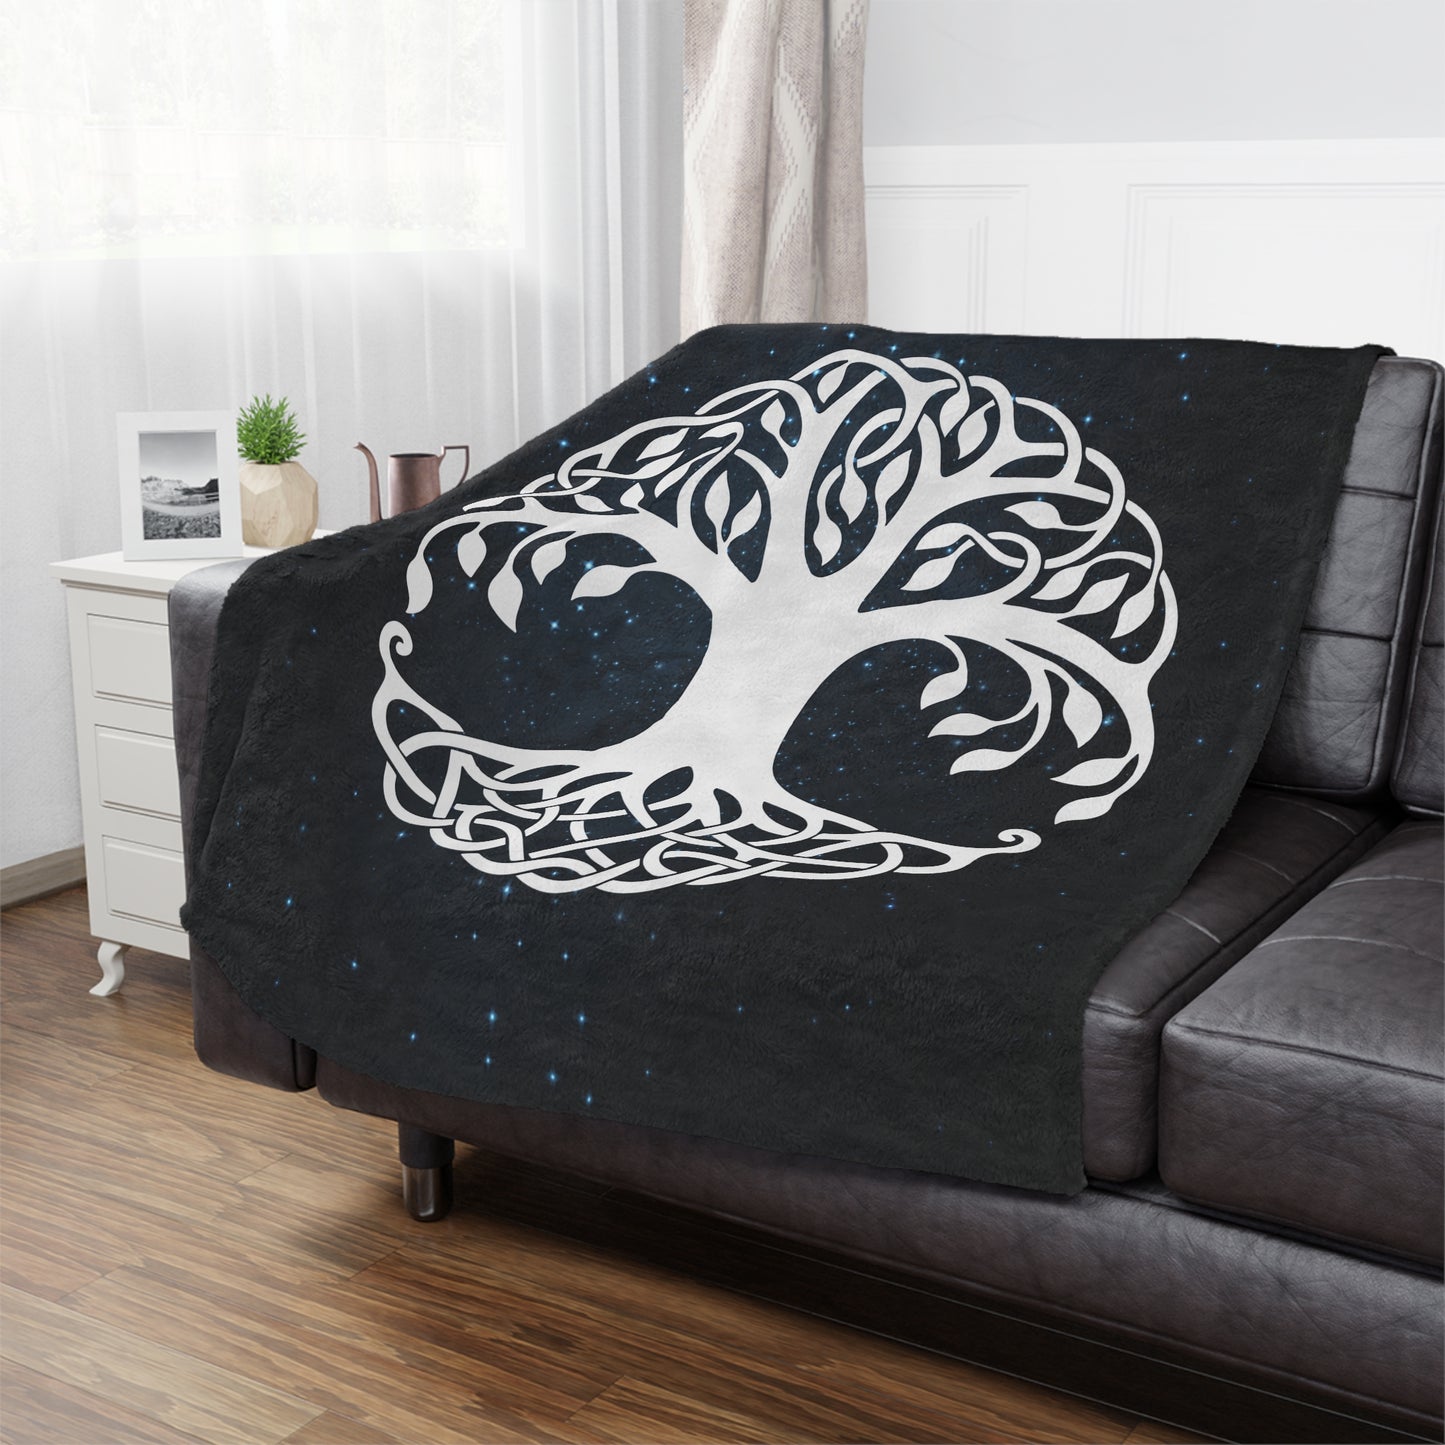 Yggdrasil World Tree of Life Velveteen Plush Throw Blanket